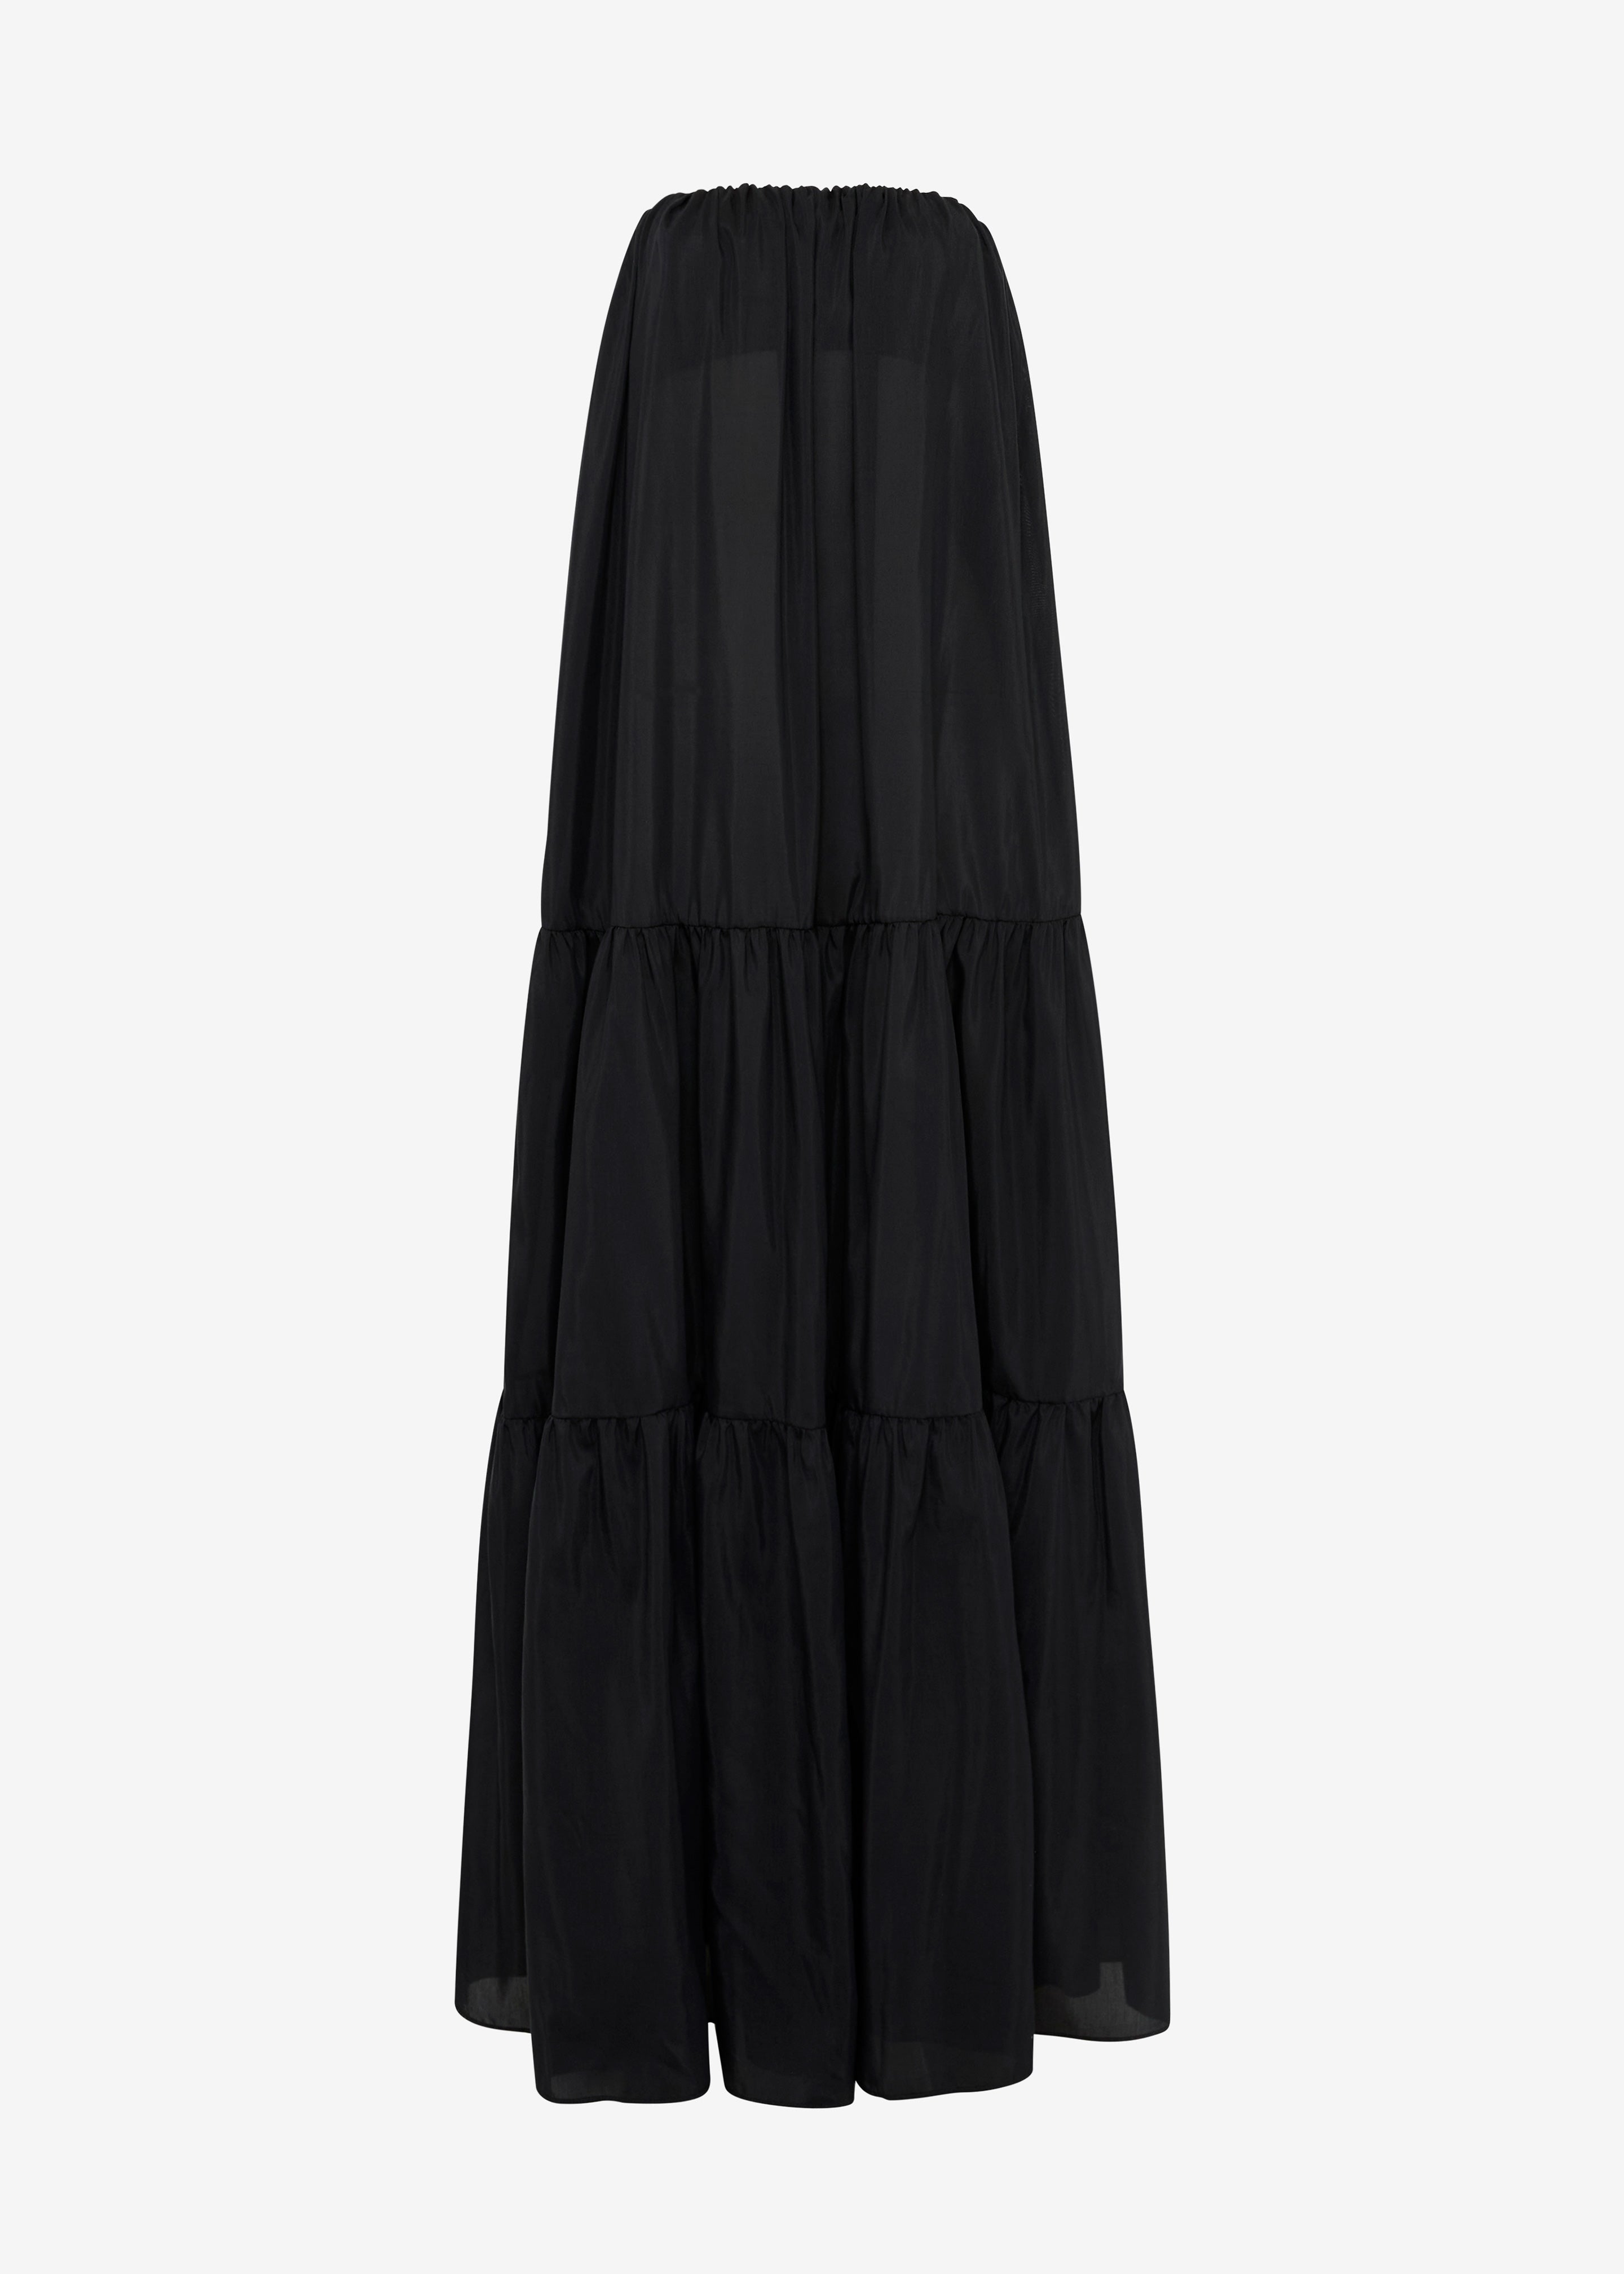 Matteau Voluminous Strapless Tiered Dress - Black - 7